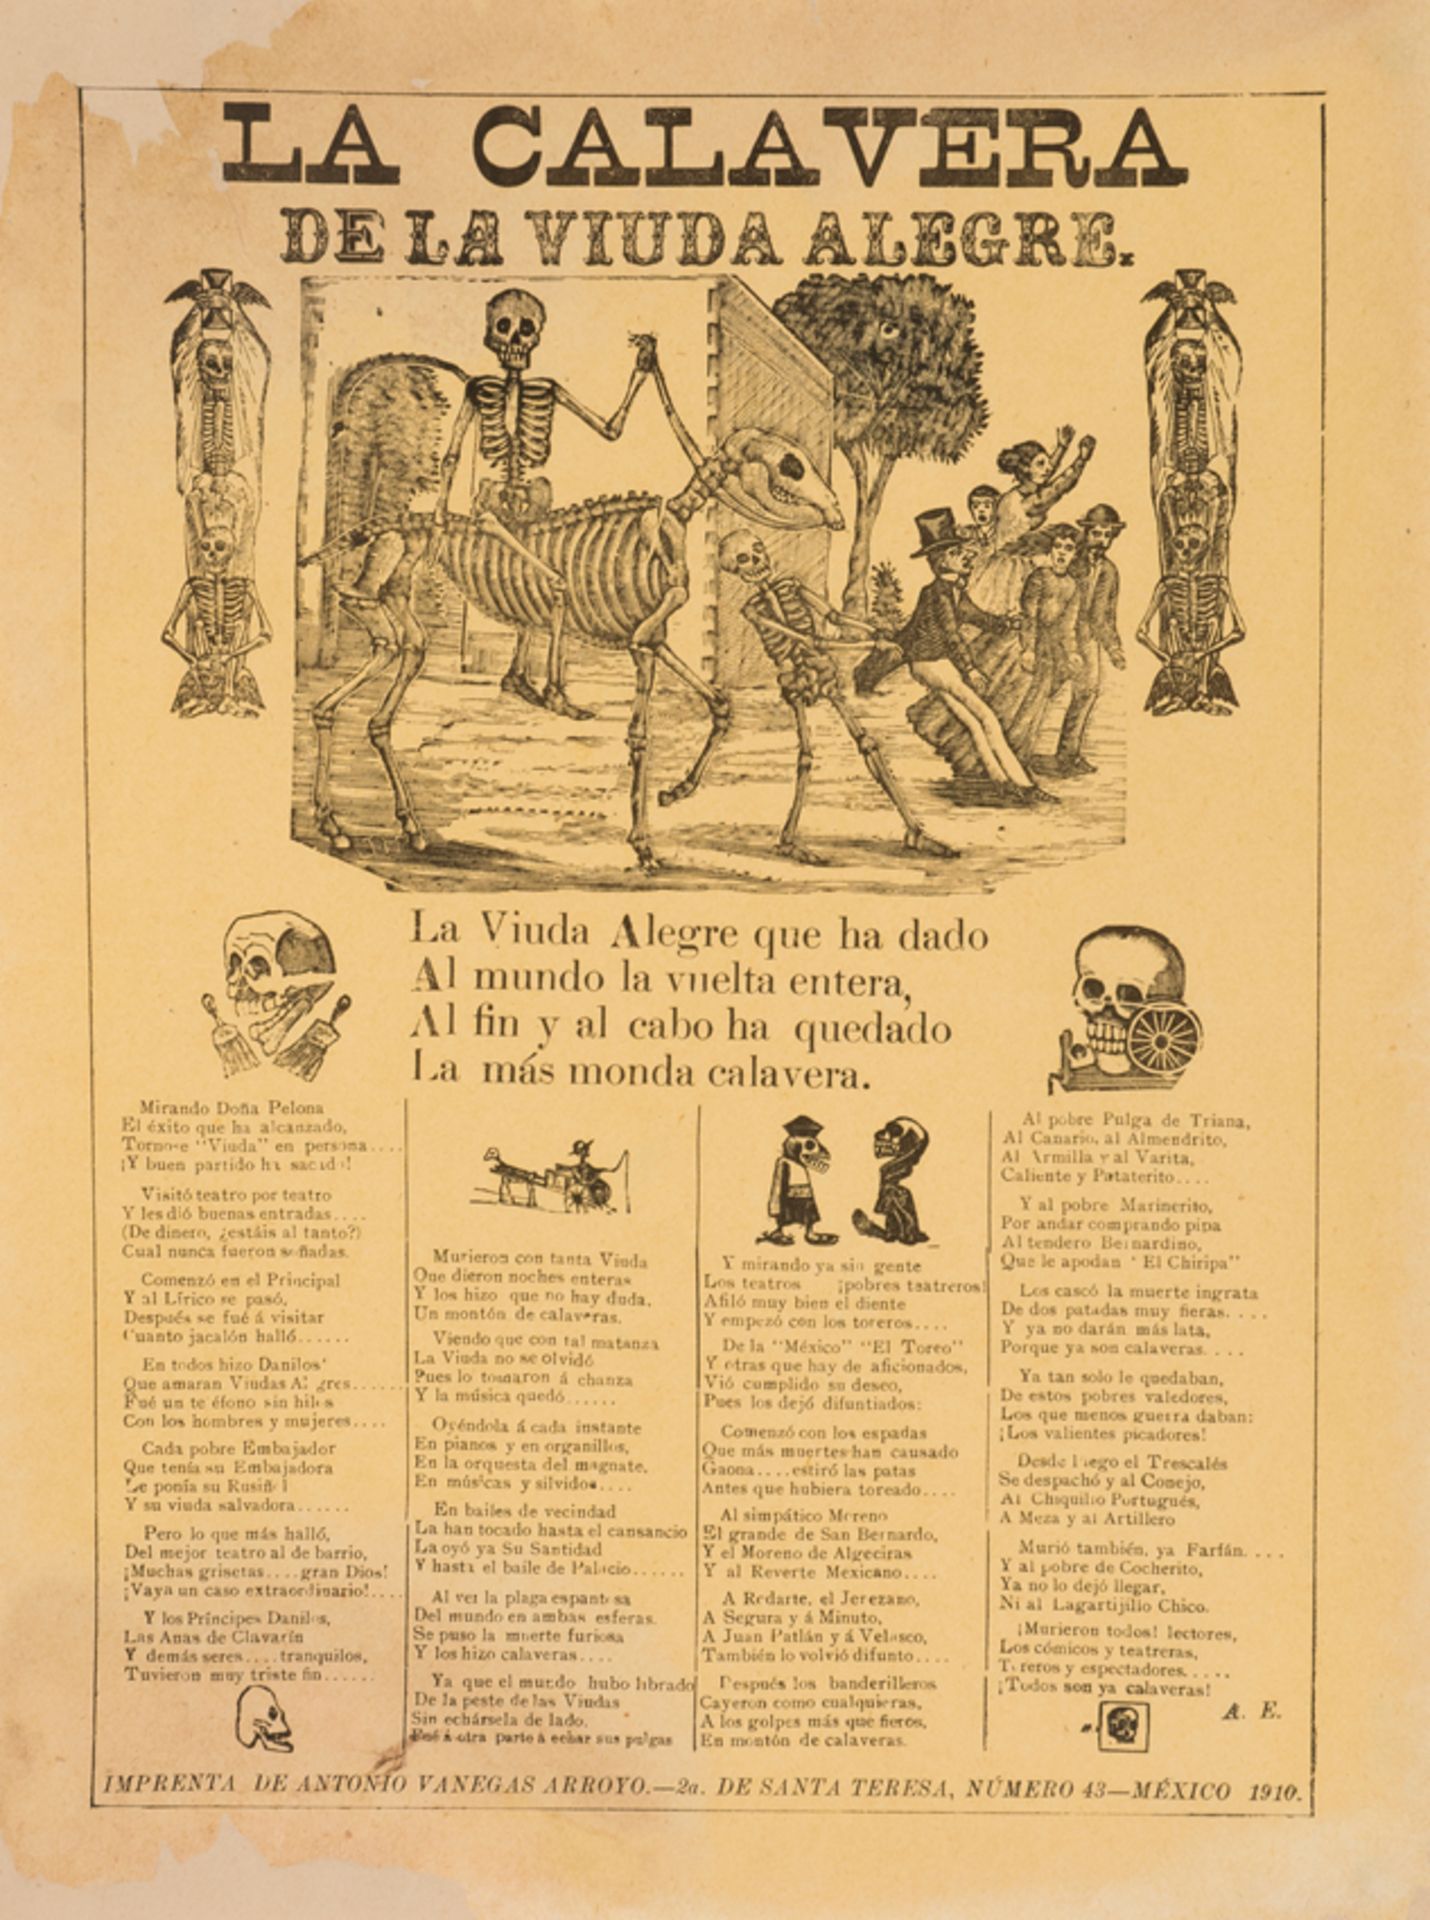 Calavera' (Skull), publication for the Día de los Muertos – Day of the Dead. Engraving on paper. Mex